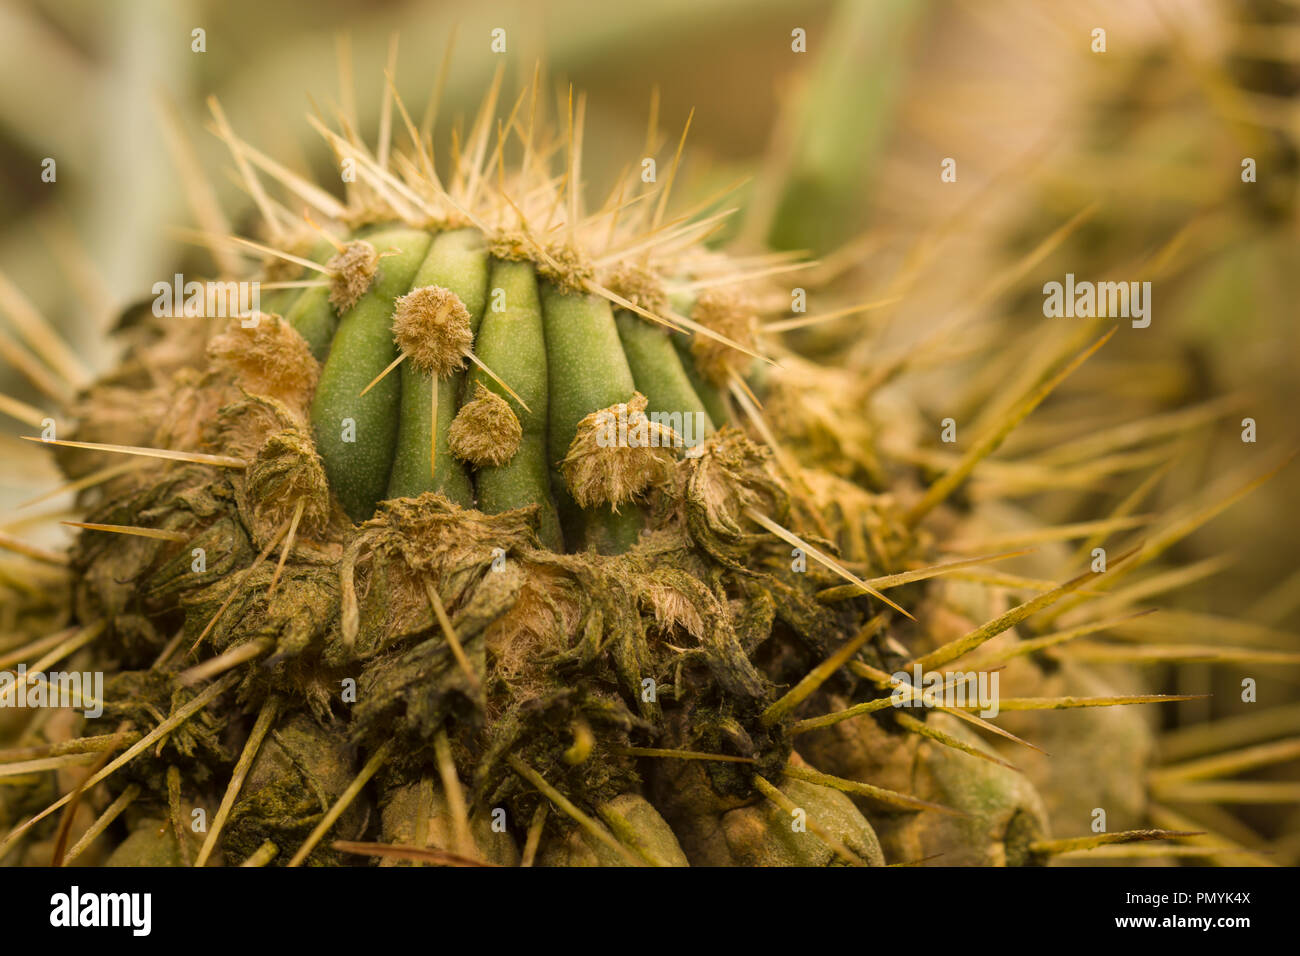 Adulto forma di copiapoa haseltoniana con wooly corona. Nativo di deserto di Atacama, Cile. Visto presso il giardino botanico di Berlino, Europa Foto Stock